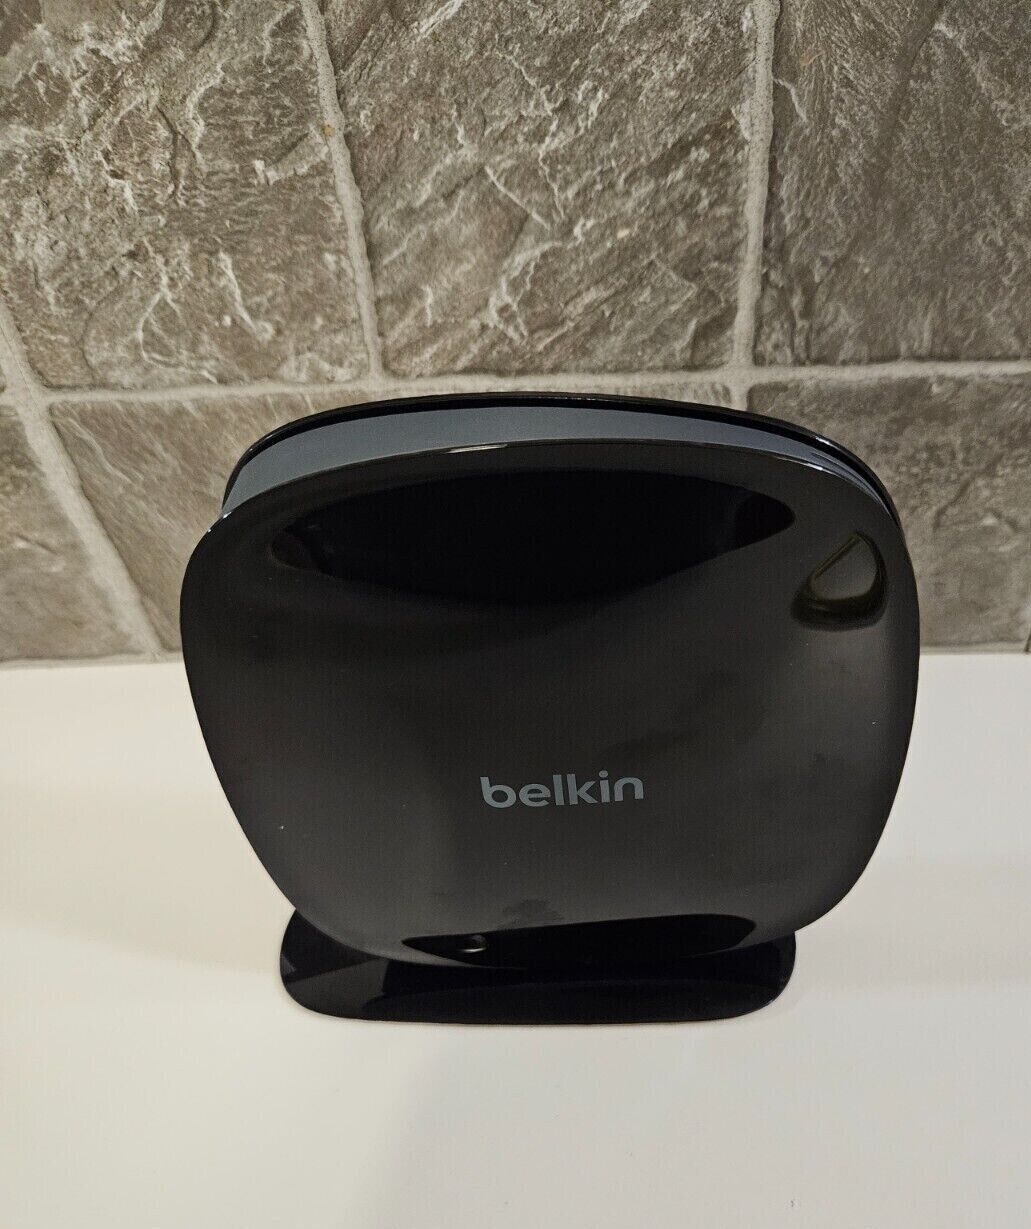 Belkin N600 DB Wireless N+ Router, Model F9K1102V3 WPA/2